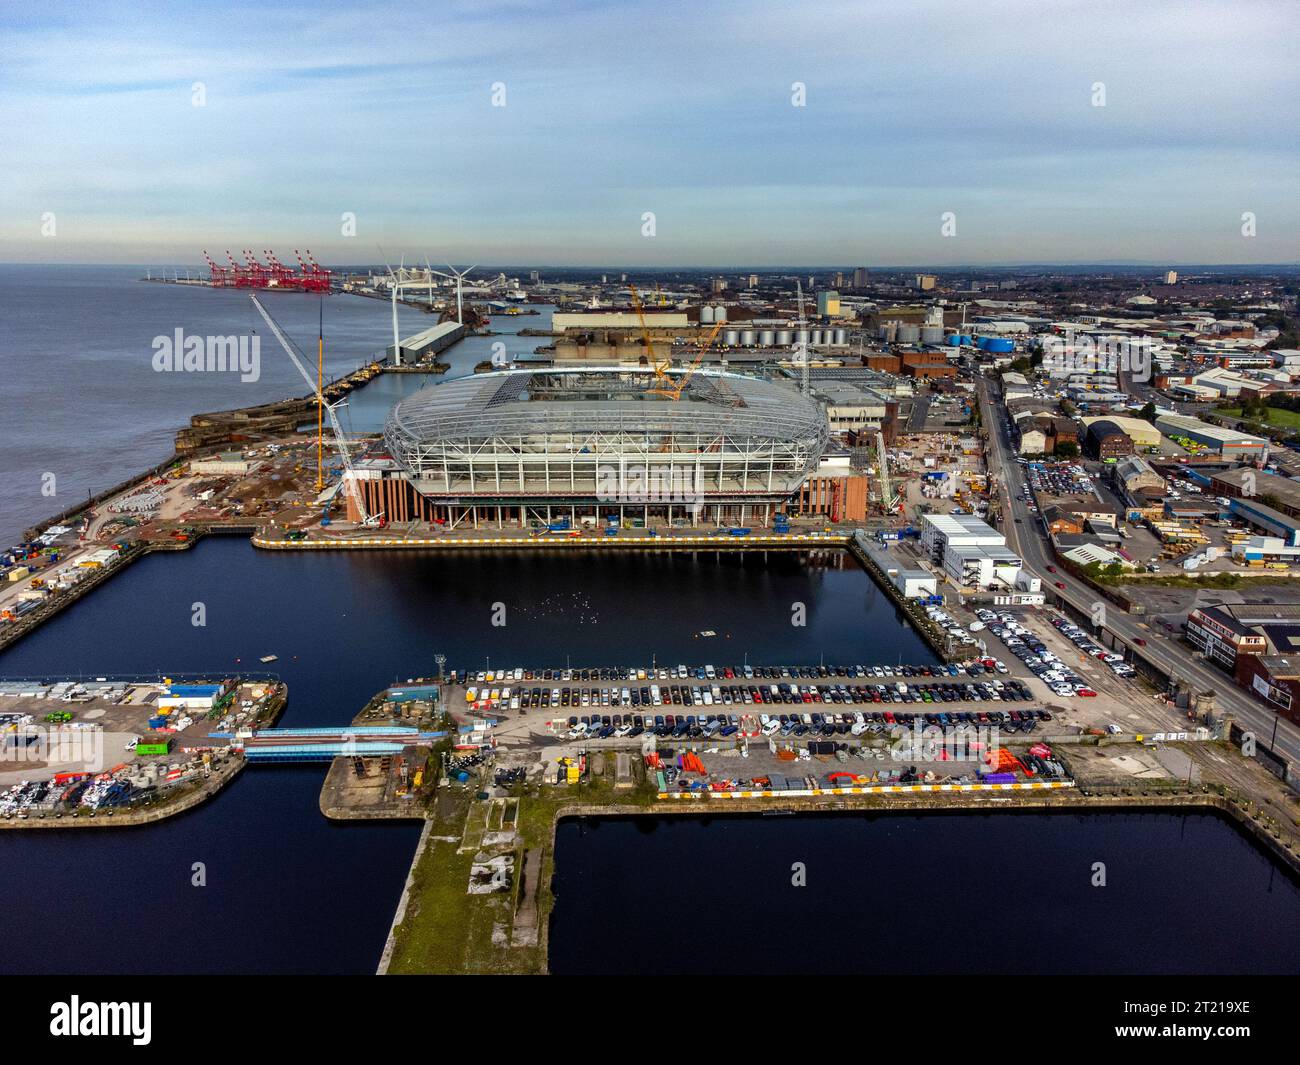 Una vista aerea mentre i lavori di costruzione continuano sul sito del nuovo stadio della squadra di calcio dell'Everton, Bramley-Moore Dock, Liverpool. Data immagine: Lunedì 16 ottobre 2023. Foto Stock